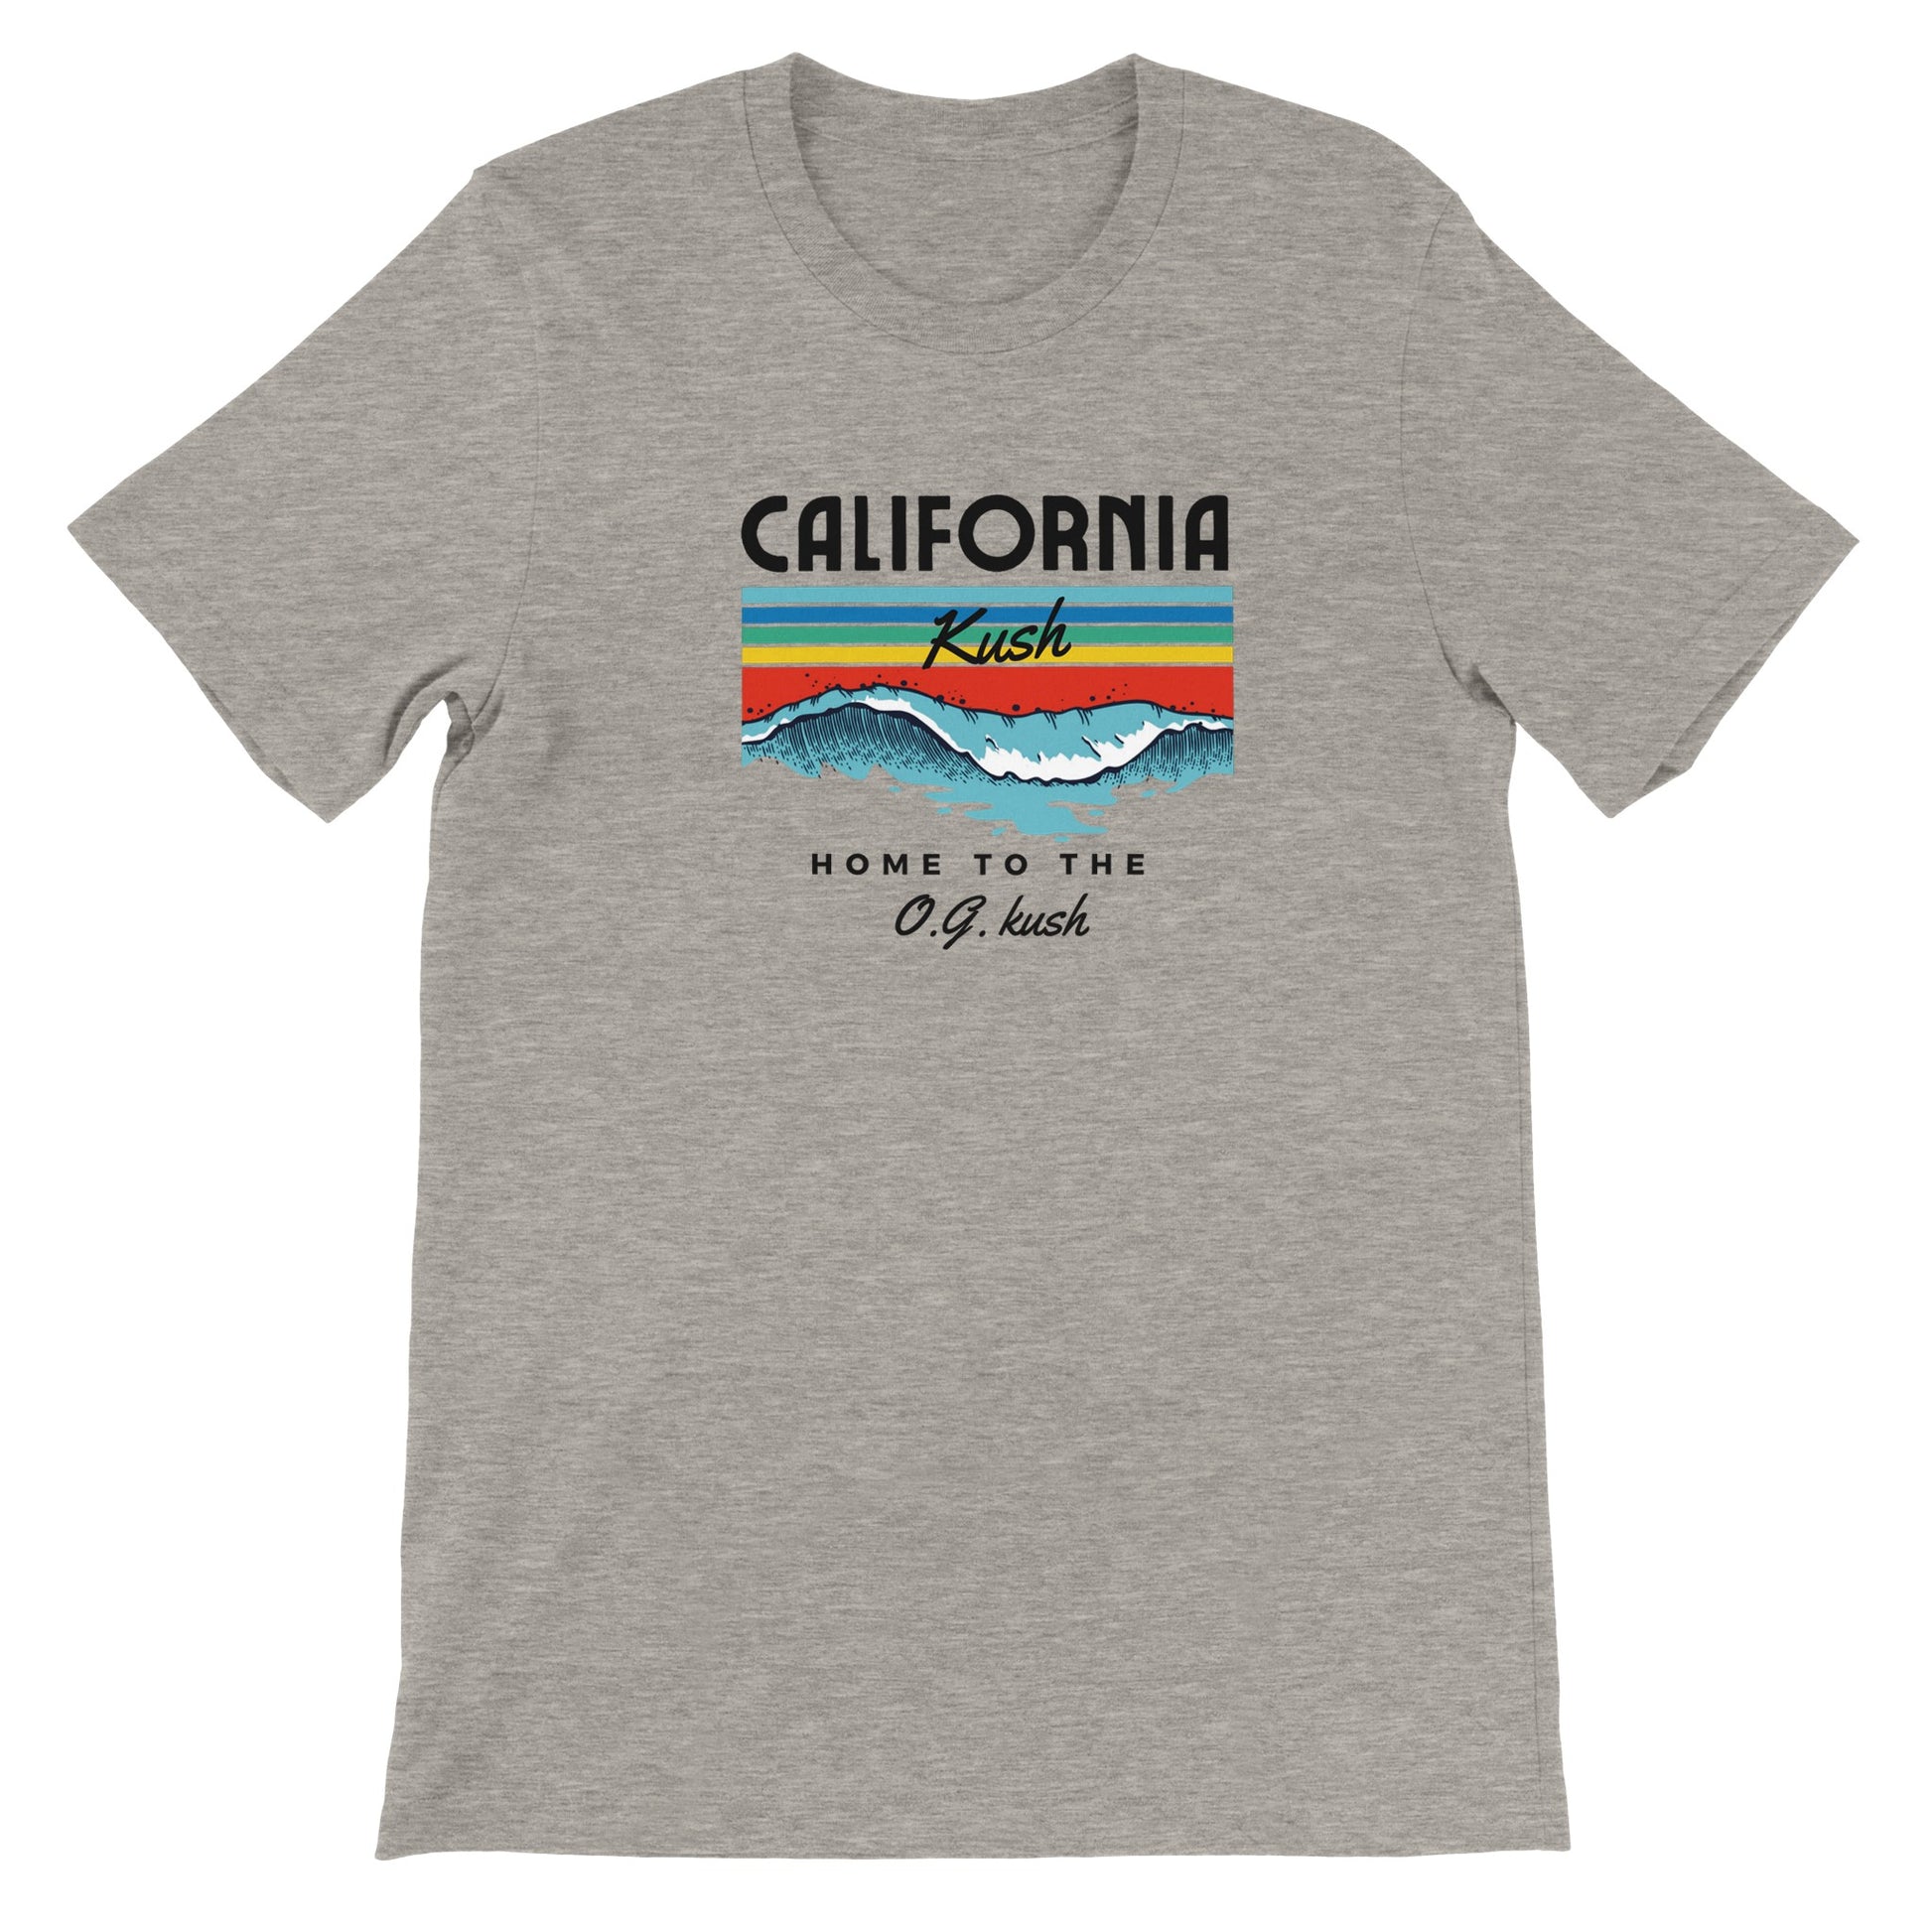 California kush T-shirt dankweedtees